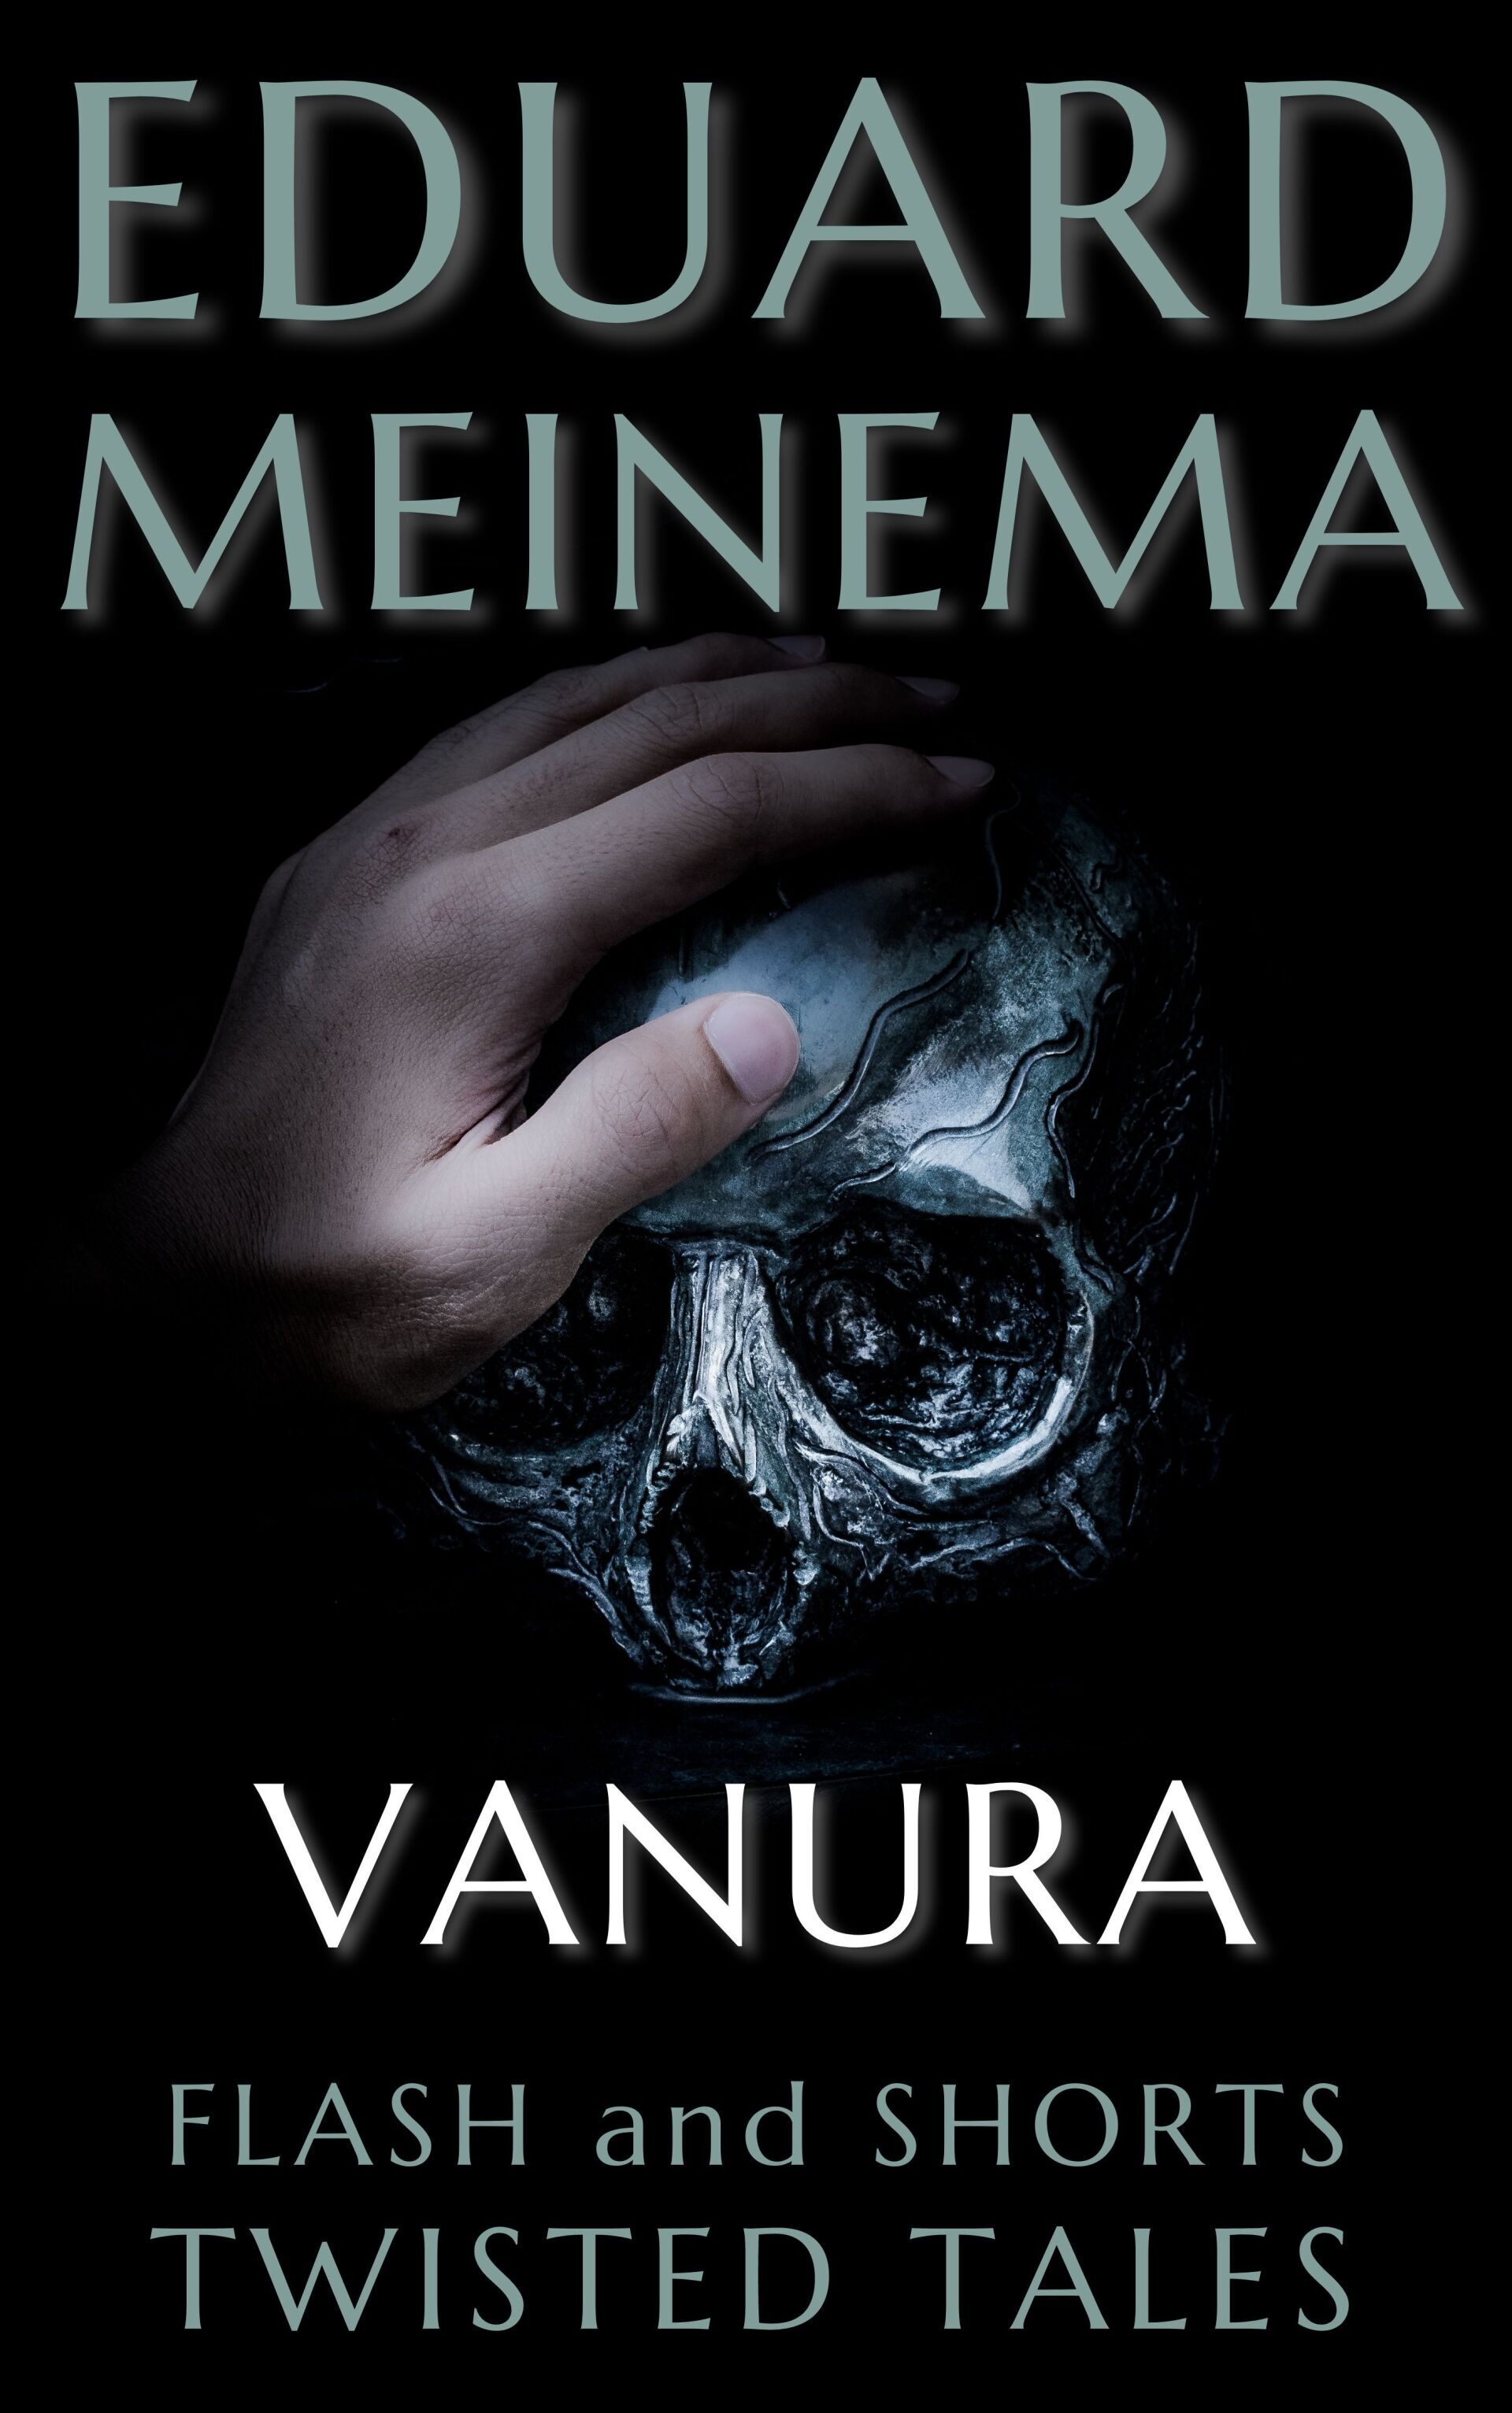 Vanura; a horror story by Eduard Meinema. Novella.